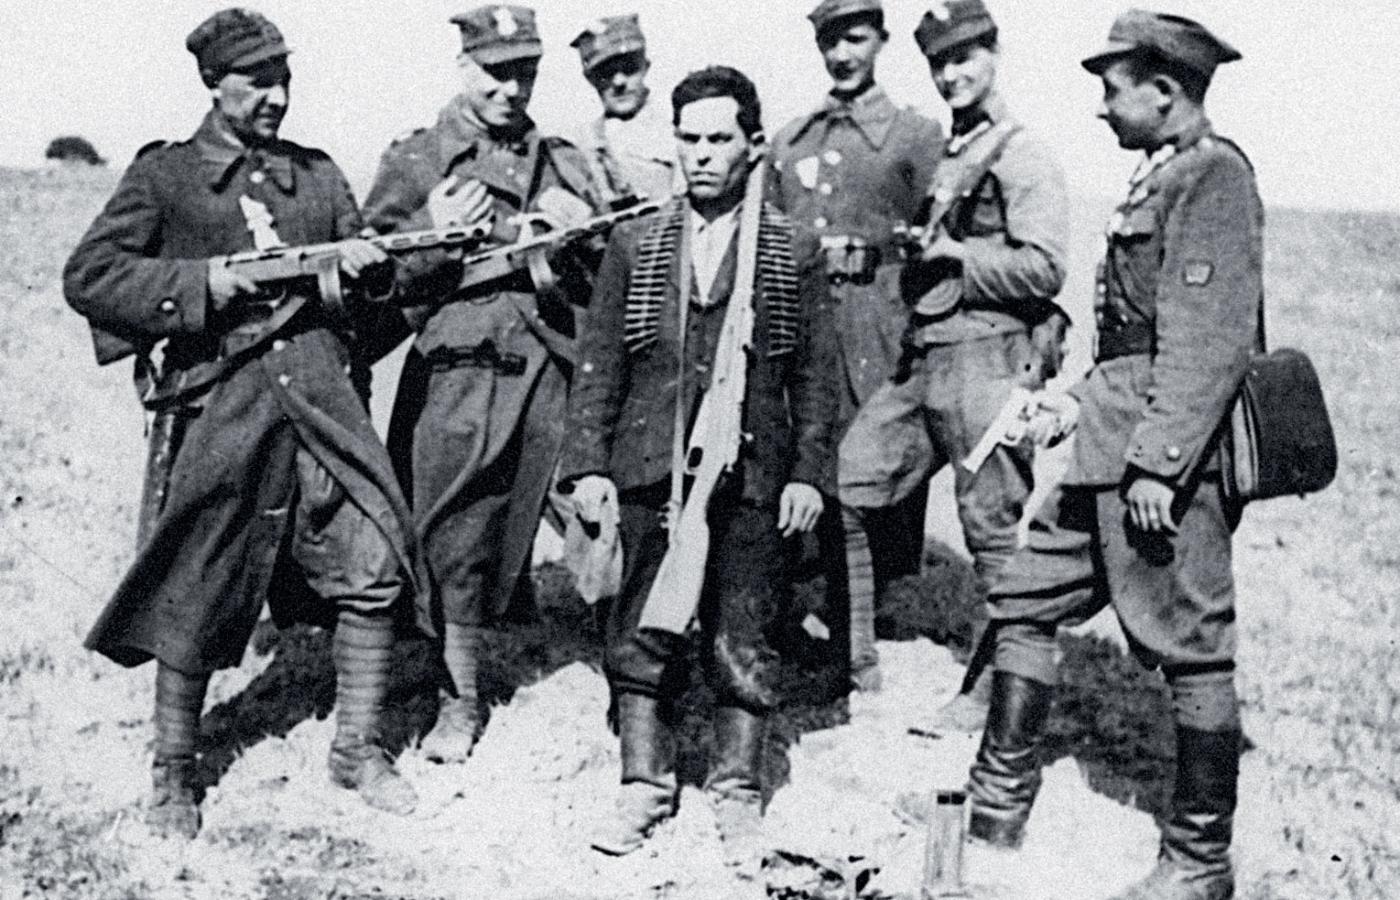 Żołnierze LWP pozujący do zdjęcia z ujętym referentem kuszcza (jednostki terenowej) OUN, lata 40.